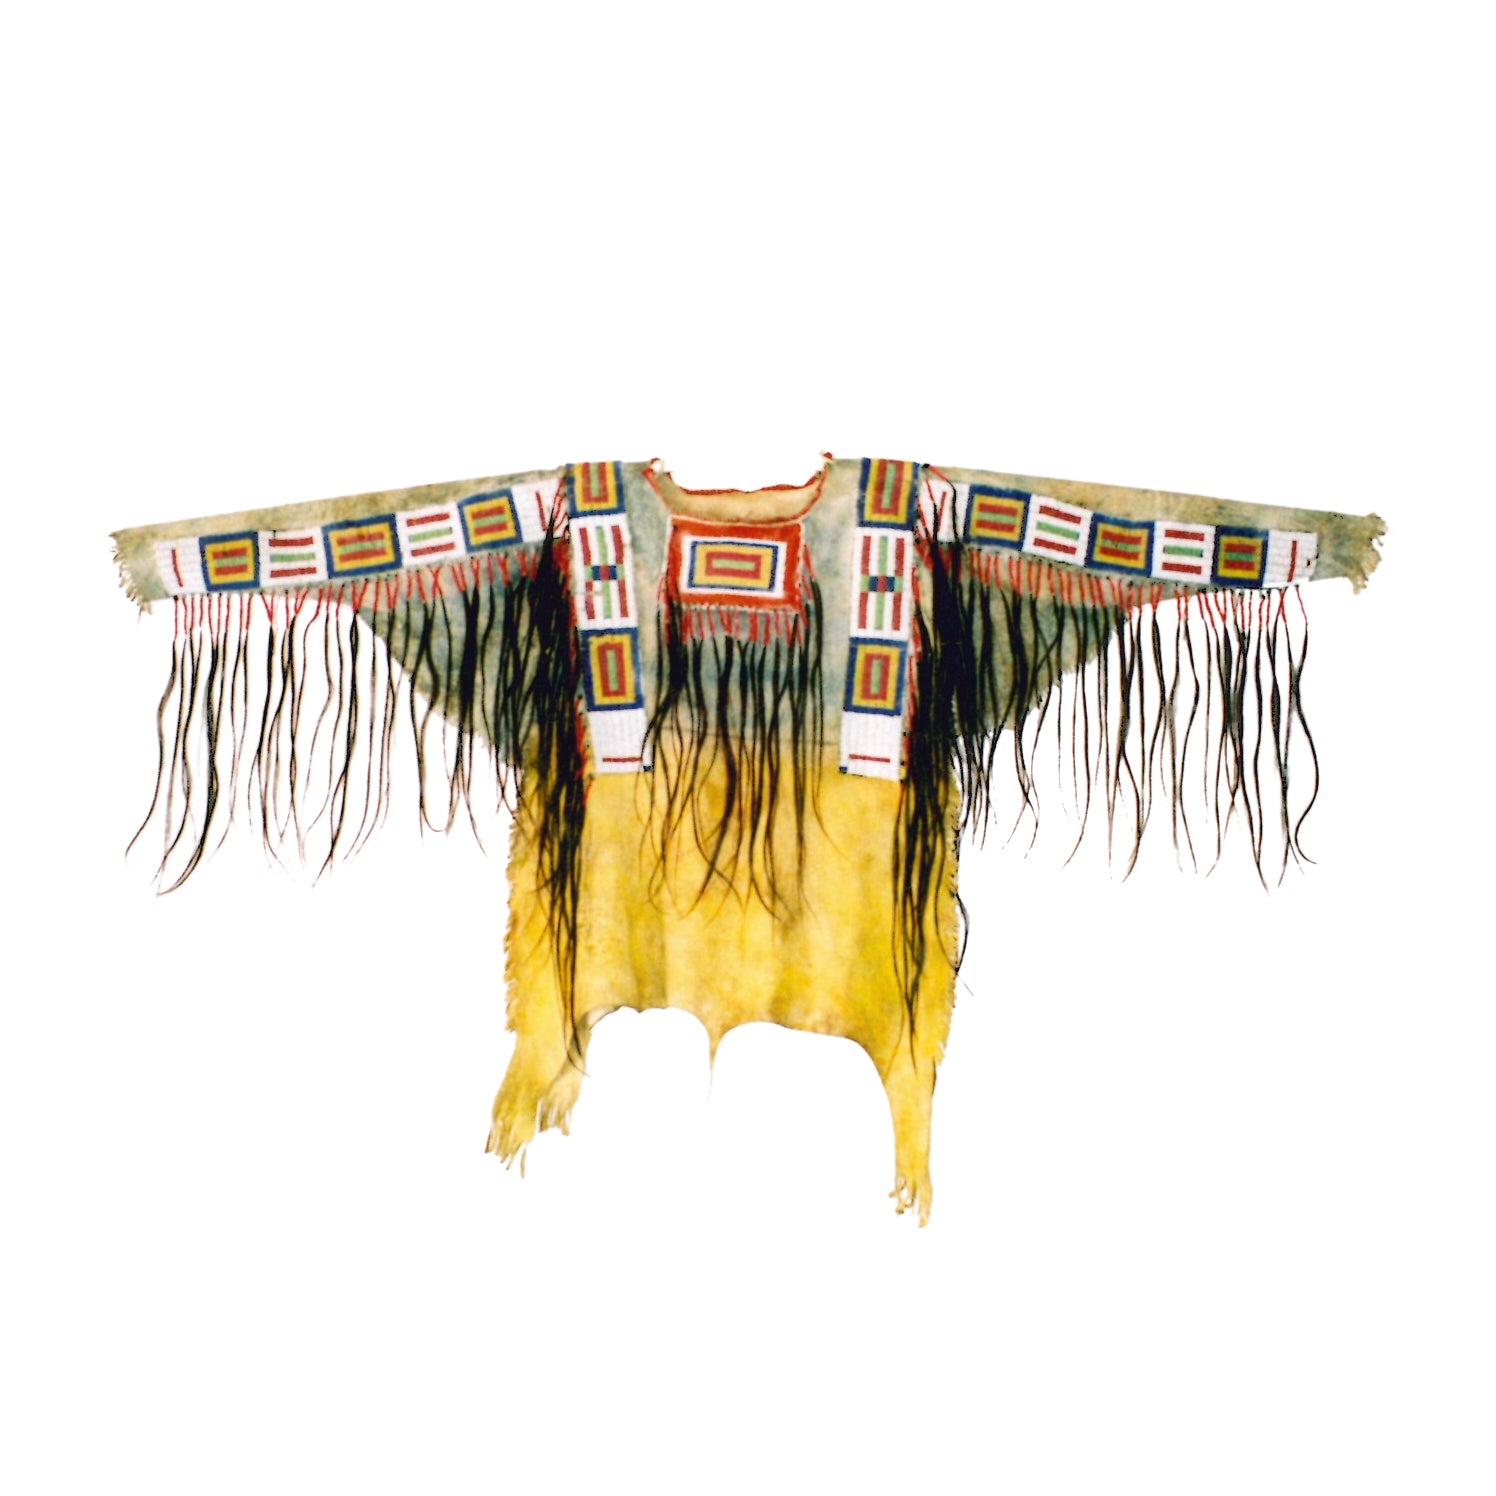 Sioux War Shirt, Native, Garment, Shirt